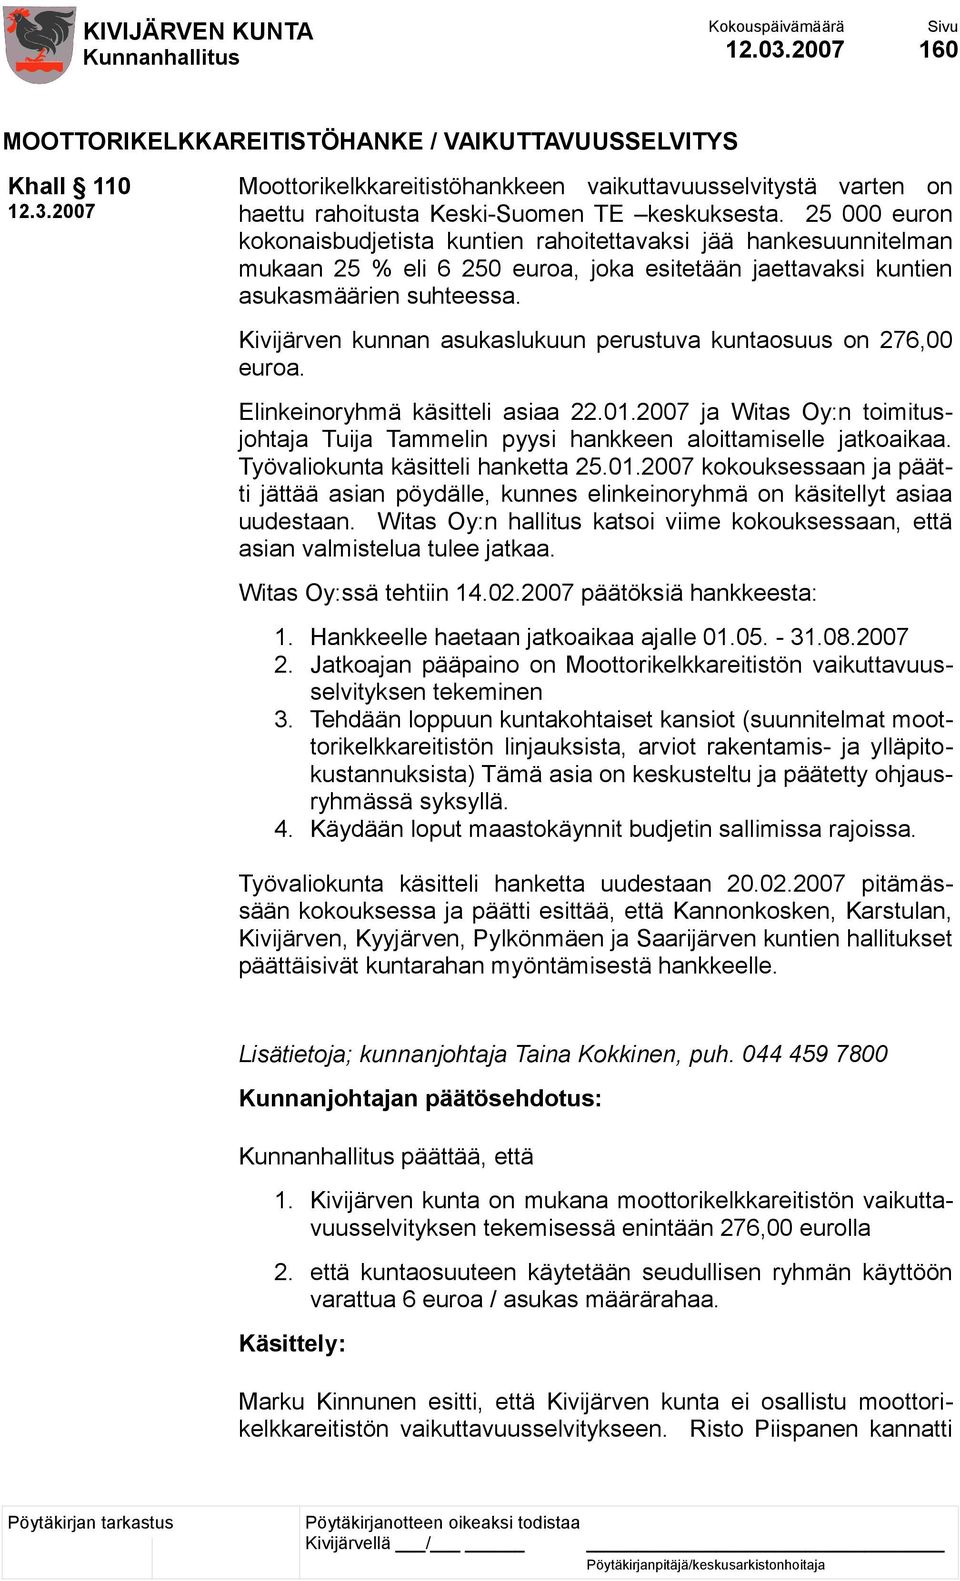 Kivijärven kunnan asukaslukuun perustuva kuntaosuus on 276,00 euroa. Elinkeinoryhmä käsitteli asiaa 22.01.2007 ja Witas Oy:n toimitusjohtaja Tuija Tammelin pyysi hankkeen aloittamiselle jatkoaikaa.